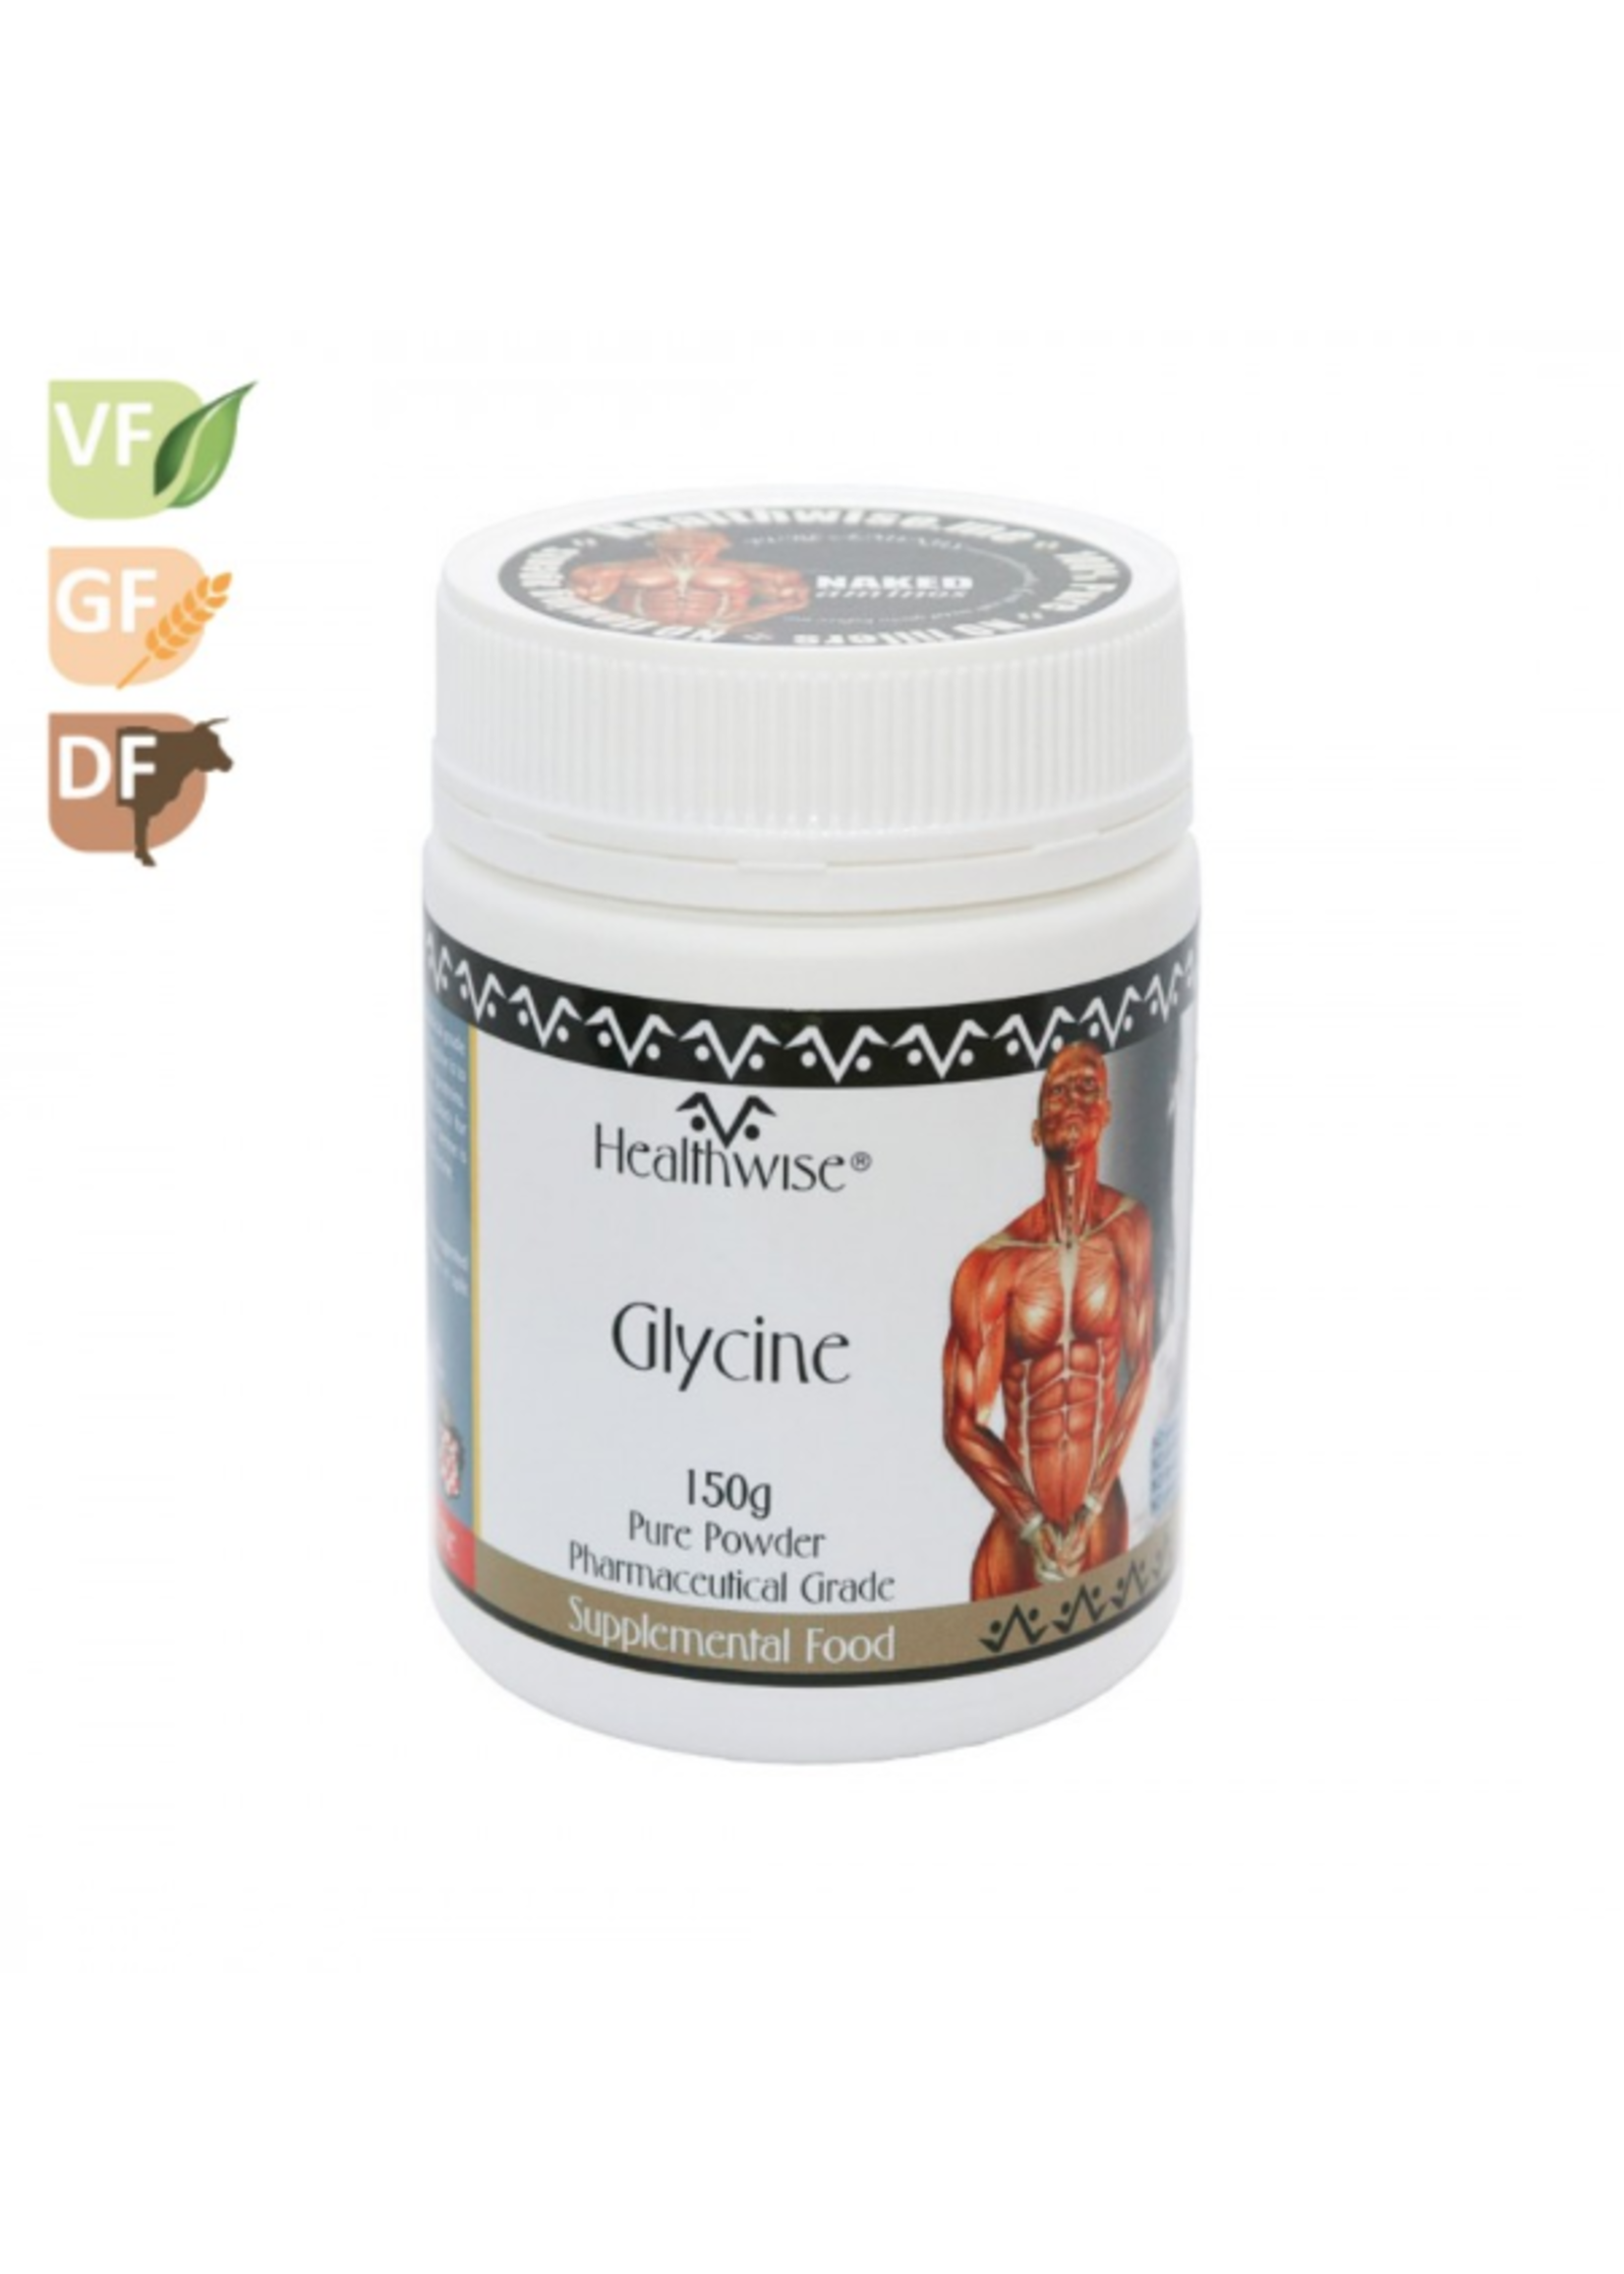 HEALTHWISE Healthwise Glycine Powder 150g